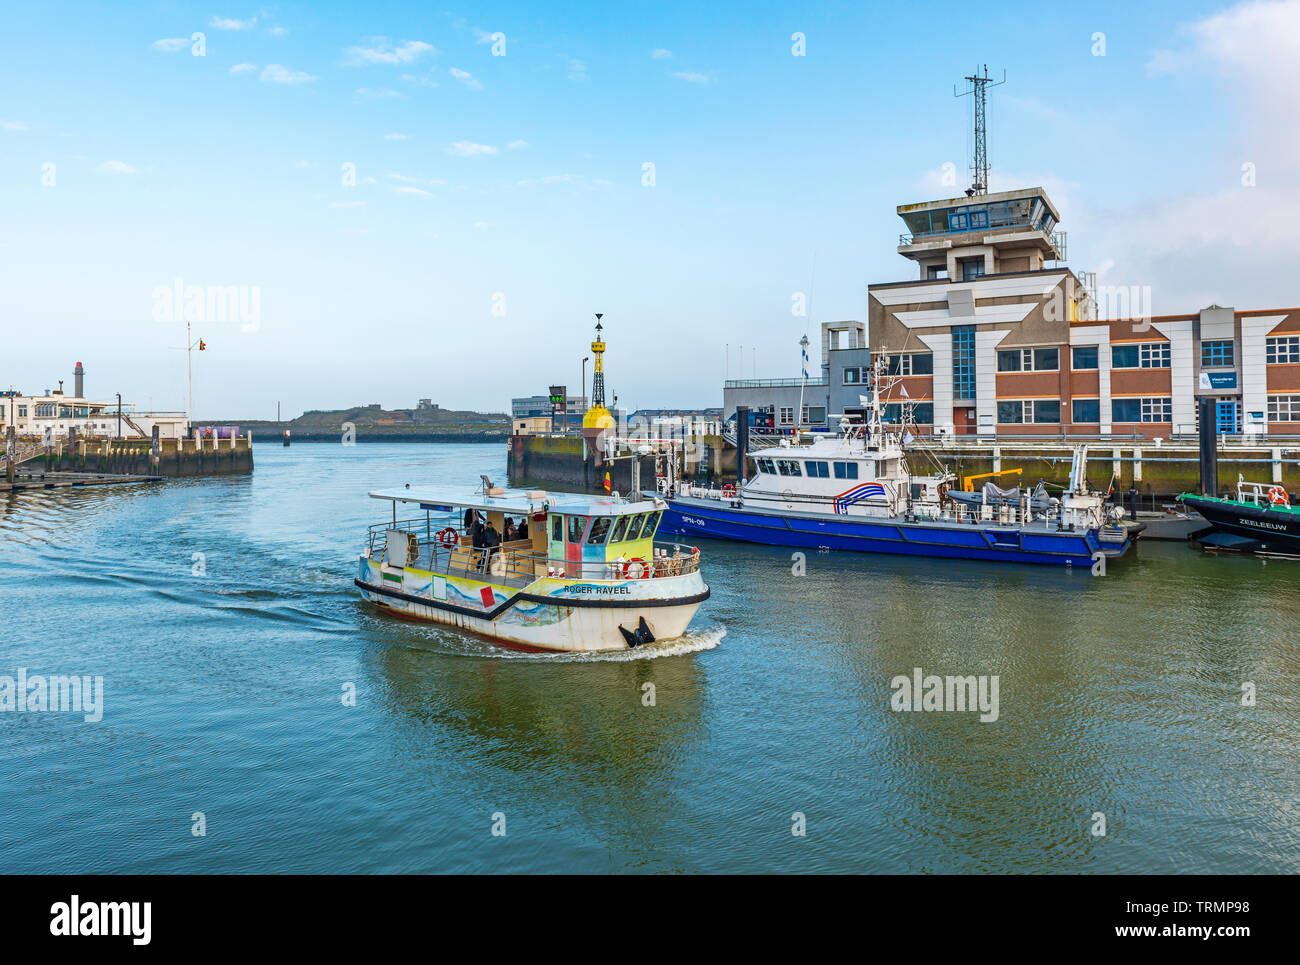 Una barca di trasporto pubblico nel porto di Ostenda (Ostenda) con l'edificio del centro del porto, Fiandre Occidentali, Belgio. Foto Stock